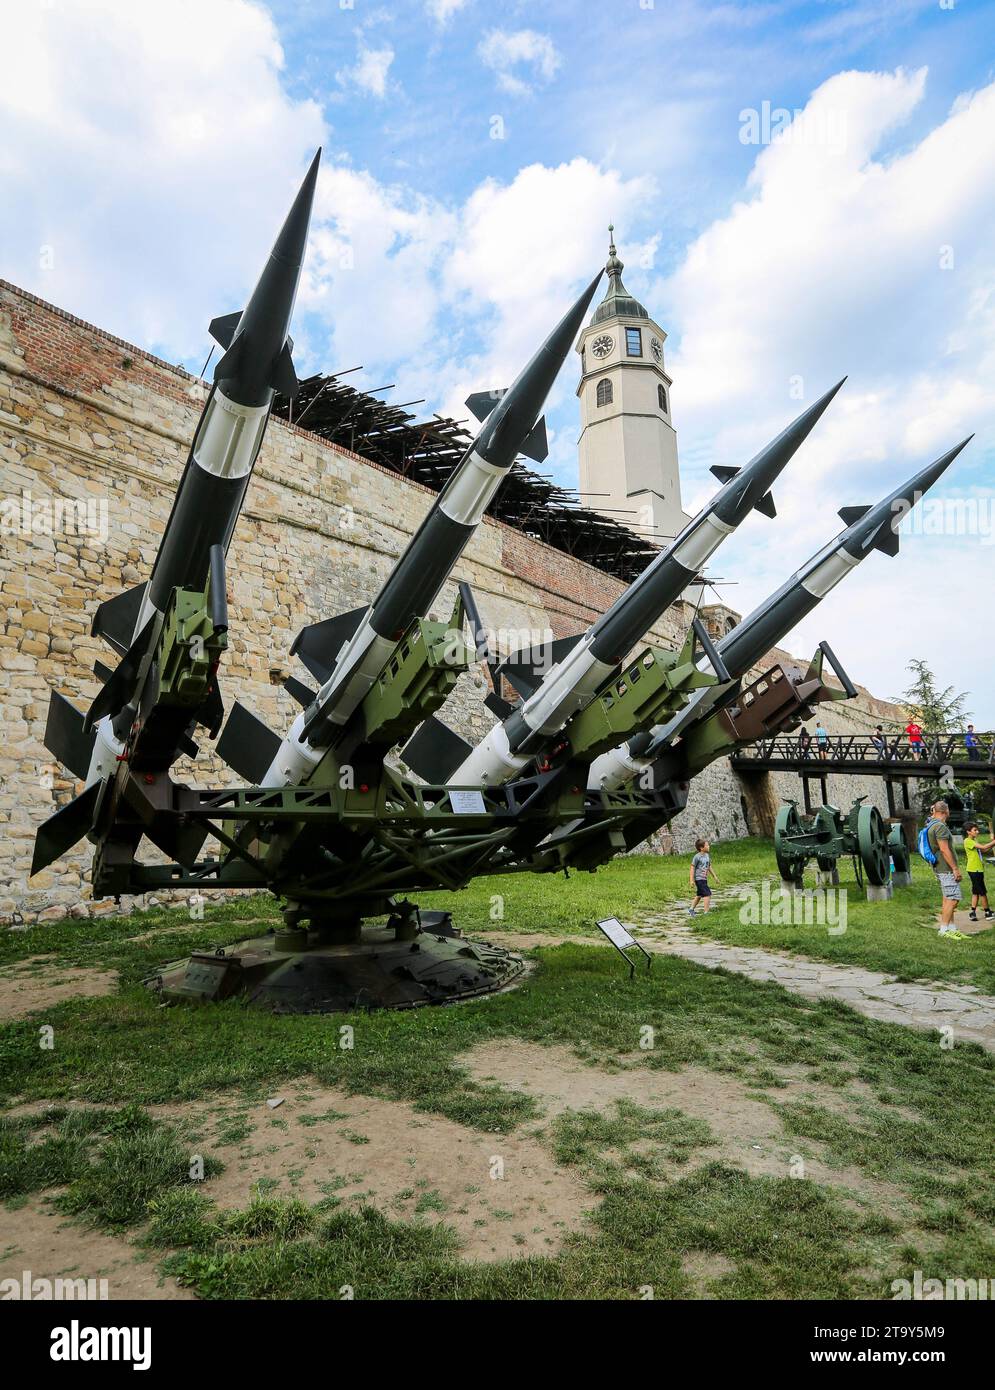 Belgrader Festung Militärmuseum: Serbische Armee S-125 Neva/Pechora Oberfläche-Luft-Raketenwerfer Verteidigungssystem & Uhrturm, Kalemegdan Park, Serbien Stockfoto